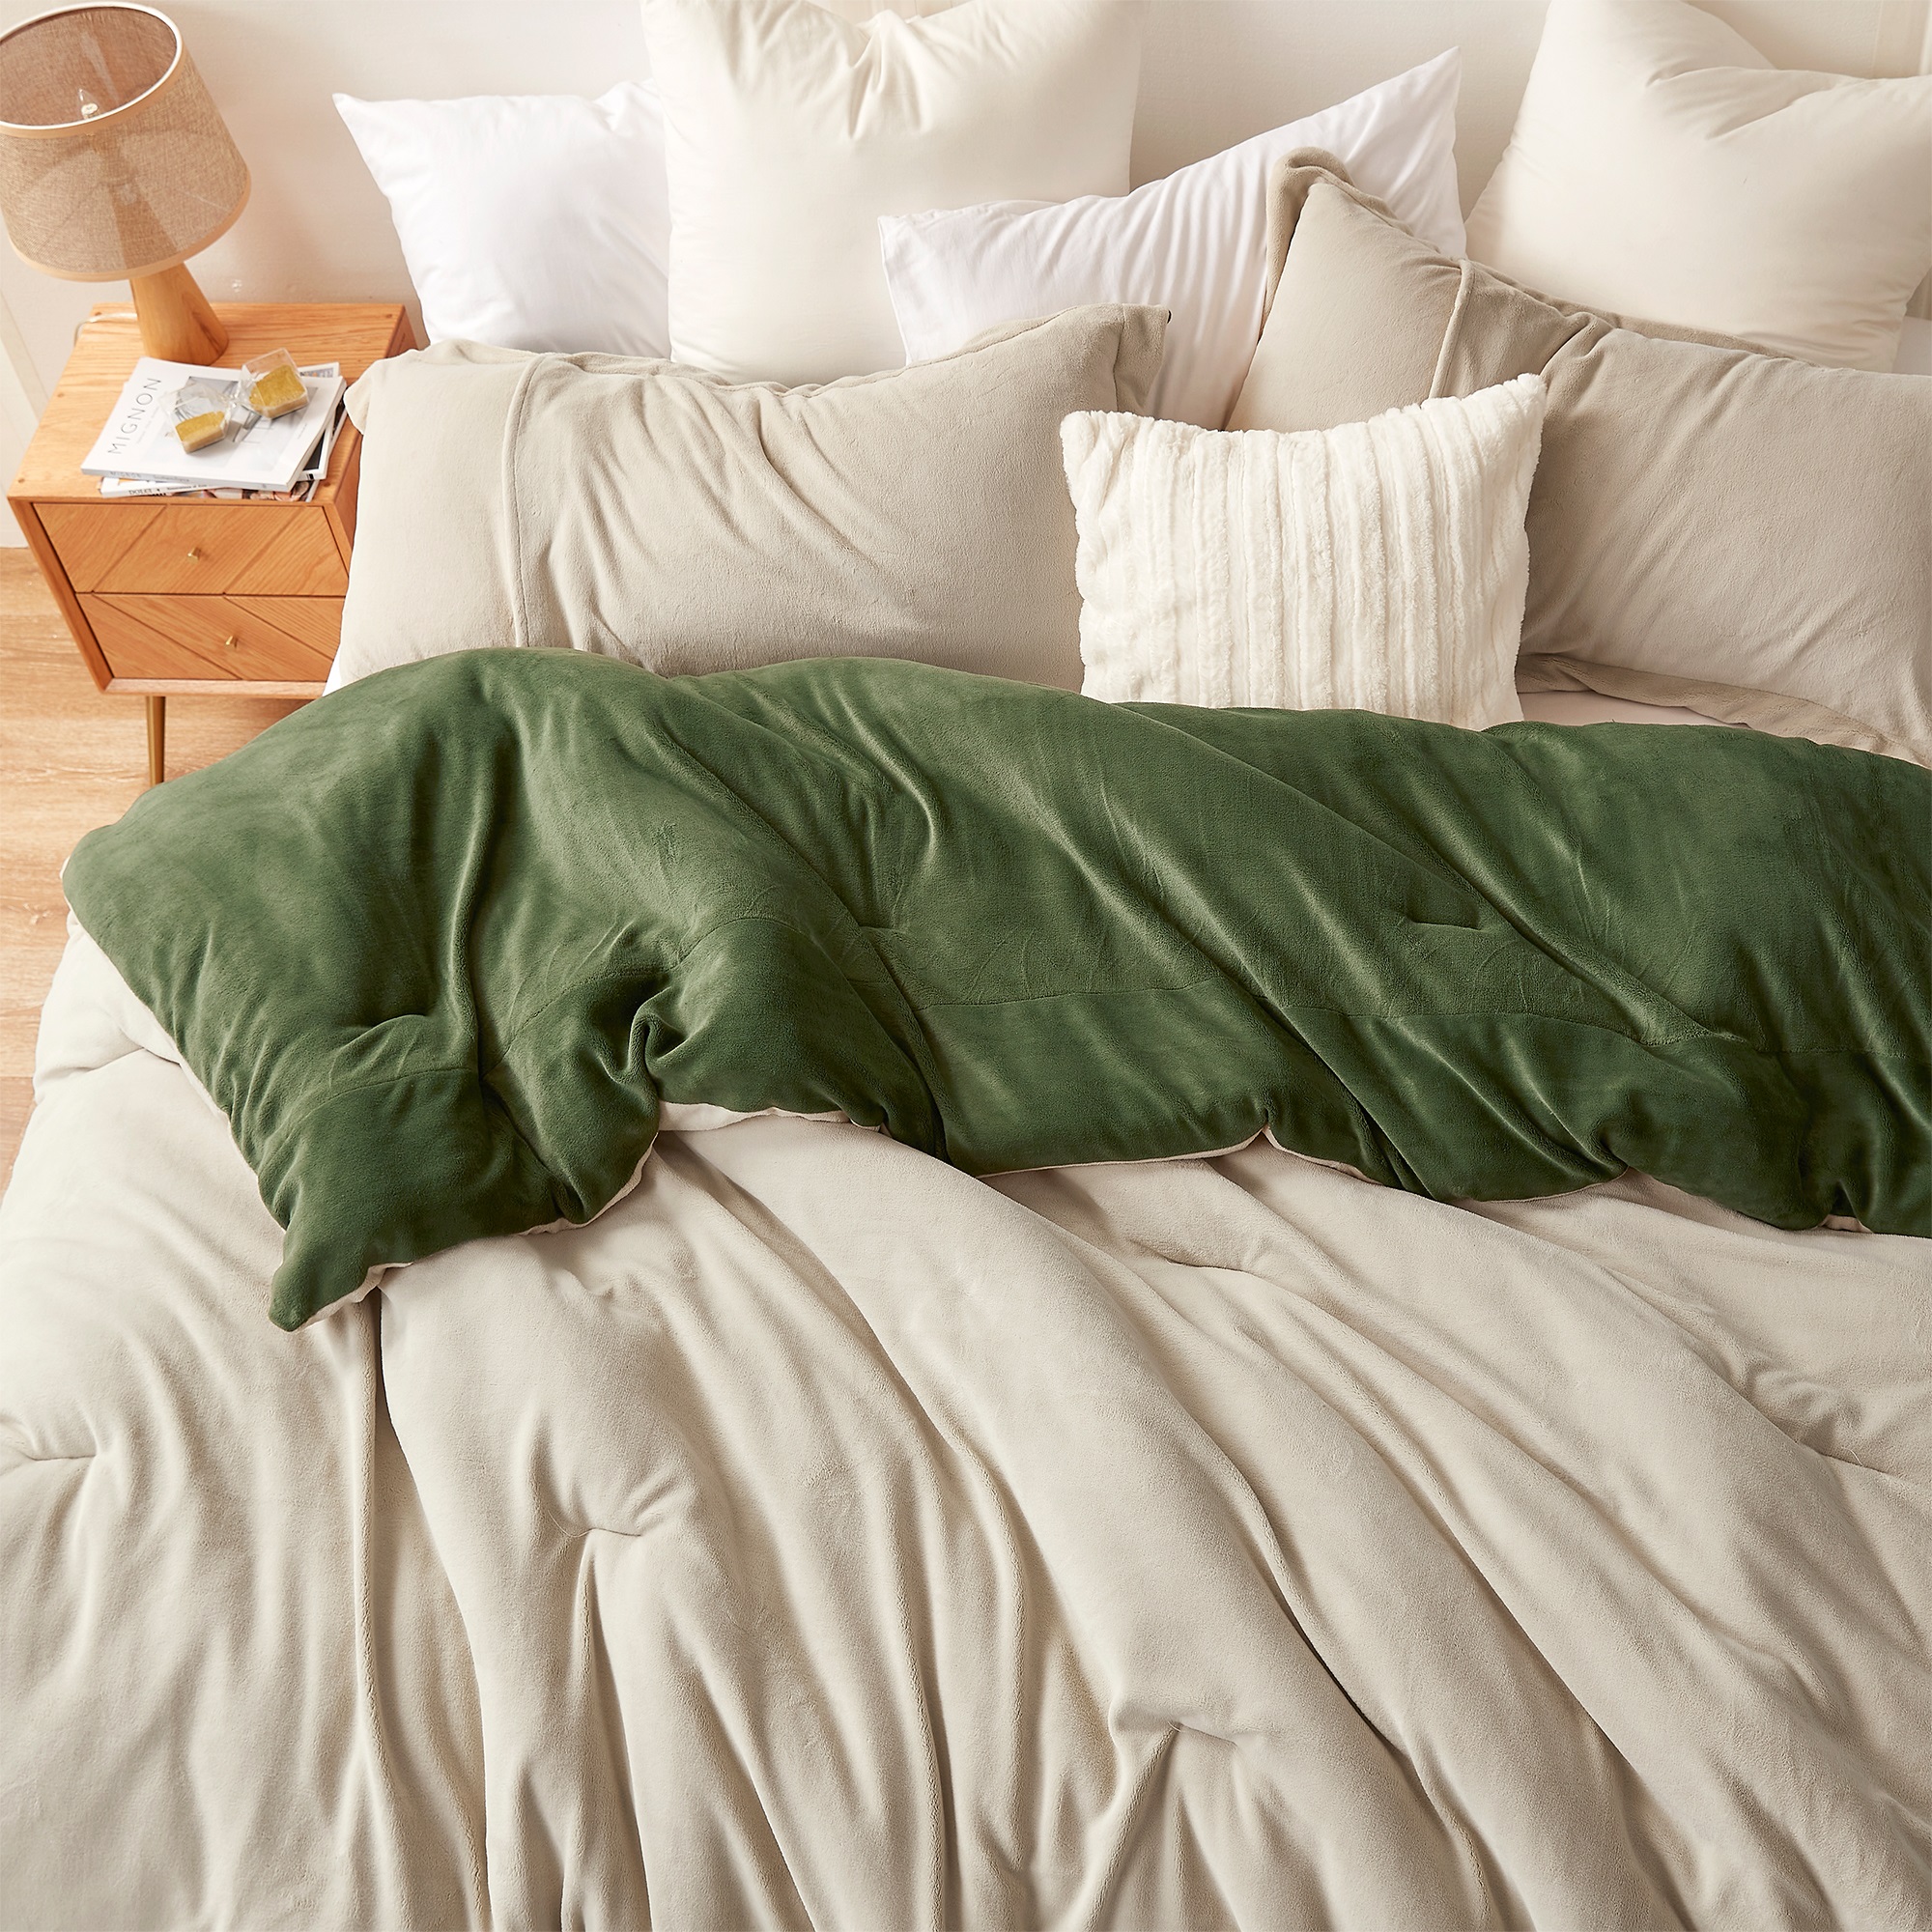 Even Heroes Need Sleep - Coma Inducer Oversized Comforter - Bravo Zulu